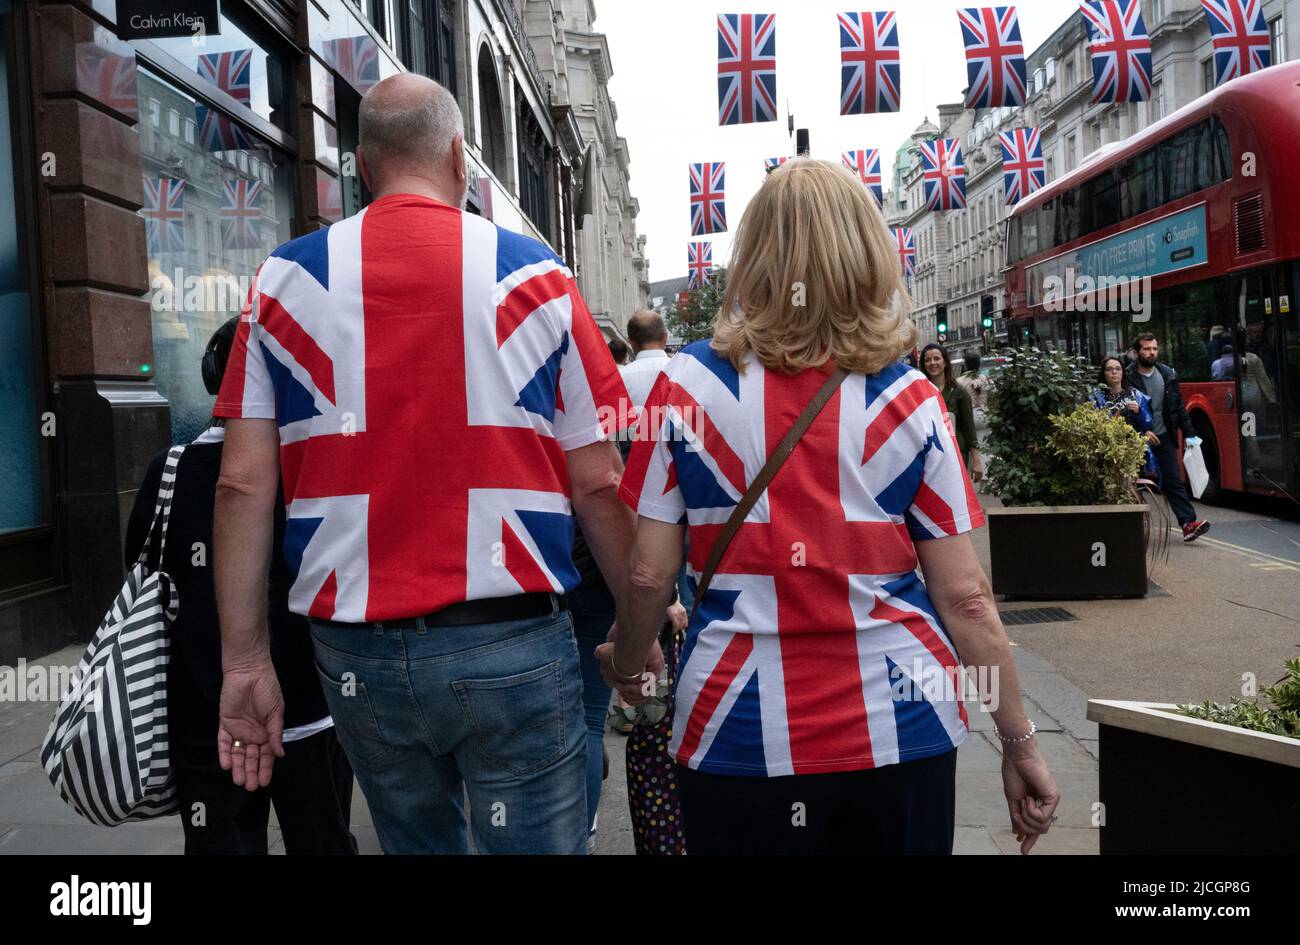 Im Zentrum von London, ein Paar mit Union Jack Tops, geht die Regent Street entlang, dekoriert mit Union Jacks. Stockfoto